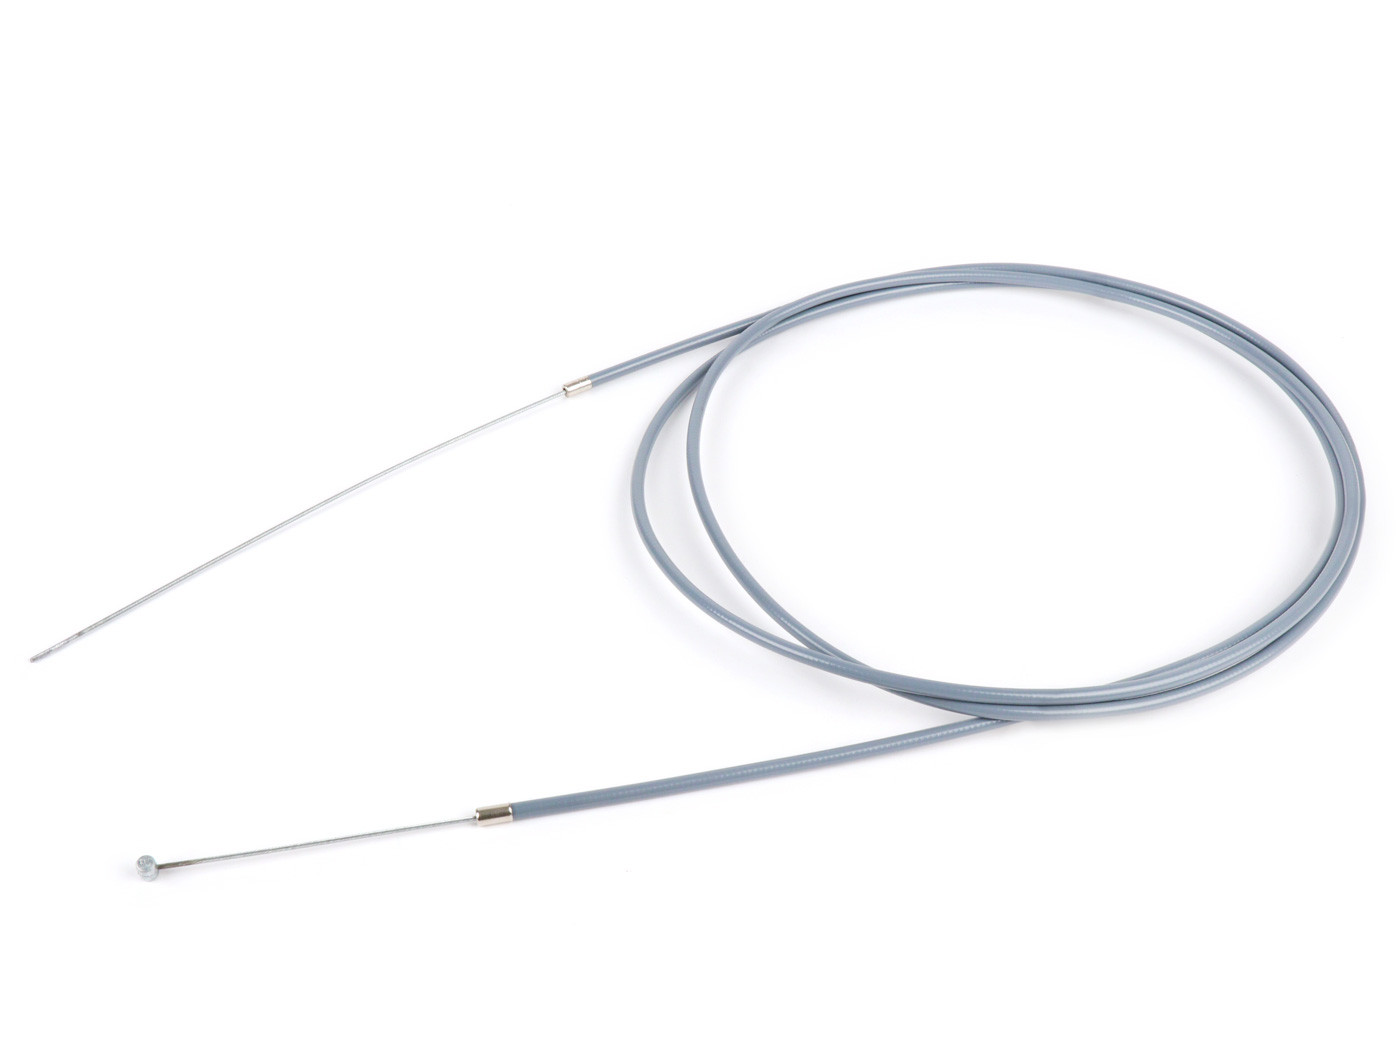 Univerzális kábel BGM Original Ř=1.6mm x 2500mm, köpeny= 2200mm, mellbimbó Ř=5.5mm x 7.5mmmm, belső köpeny PE, szürke, váltókábelként használt.